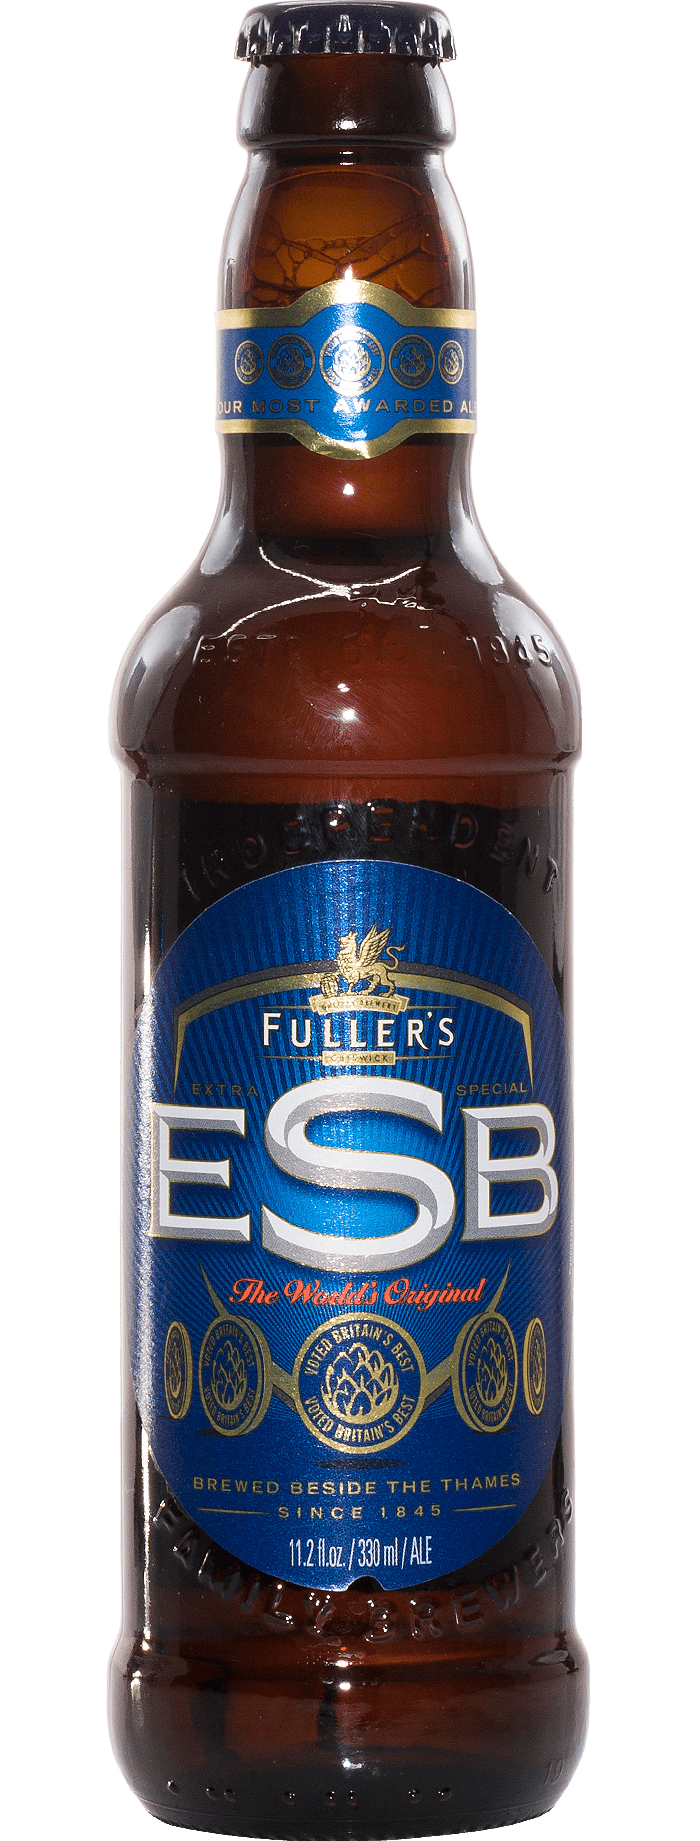 Fuller's ESB 500 mL (Bottle) | UK Beer - Panen Lentera Jaya